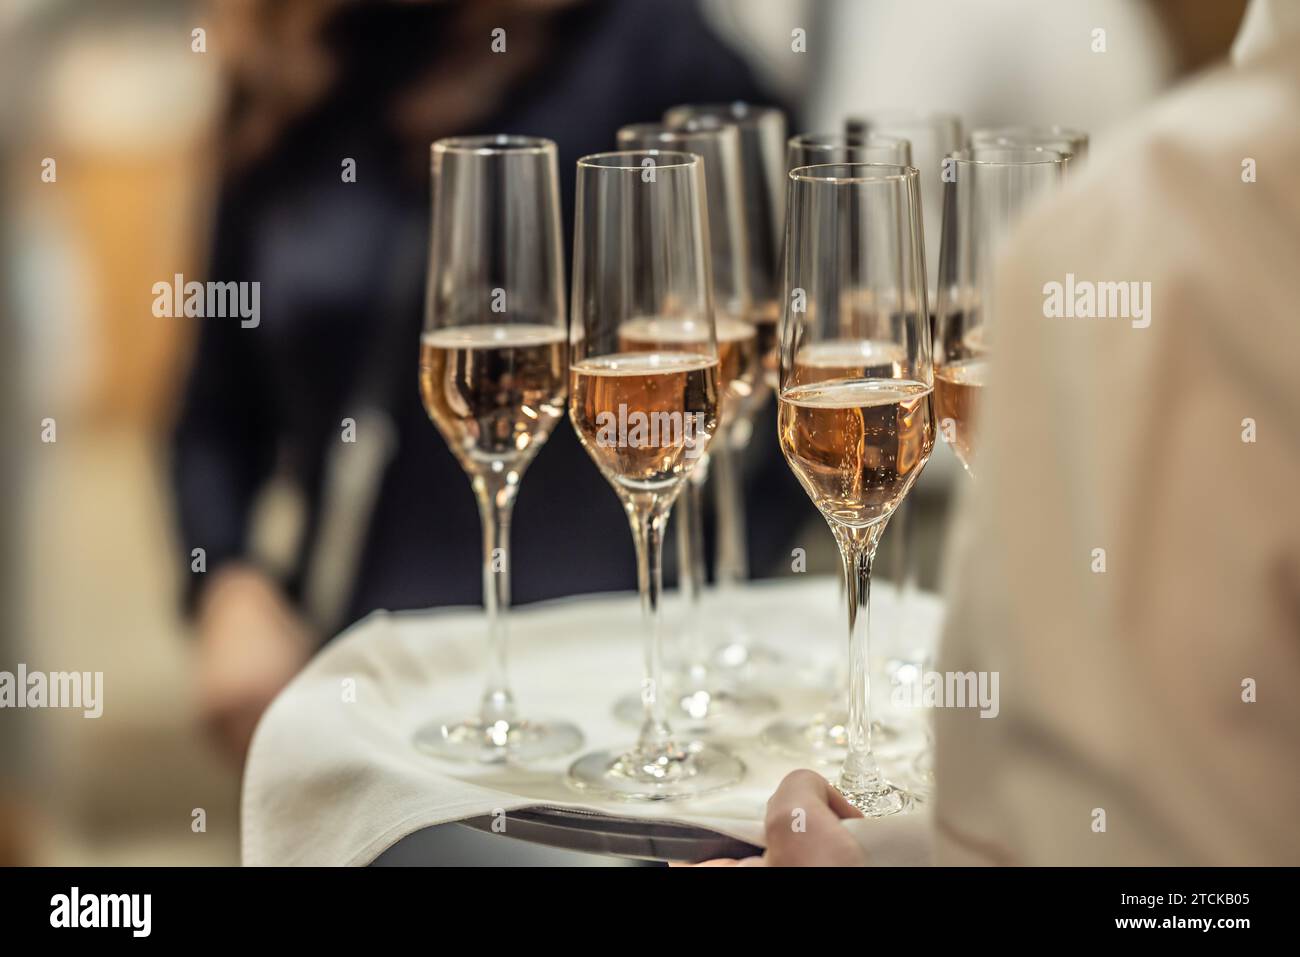 Un jeune serveur tient une assiette avec du champagne ou du prosecco comme boisson de bienvenue lors d'un événement à l'hôtel. Banque D'Images